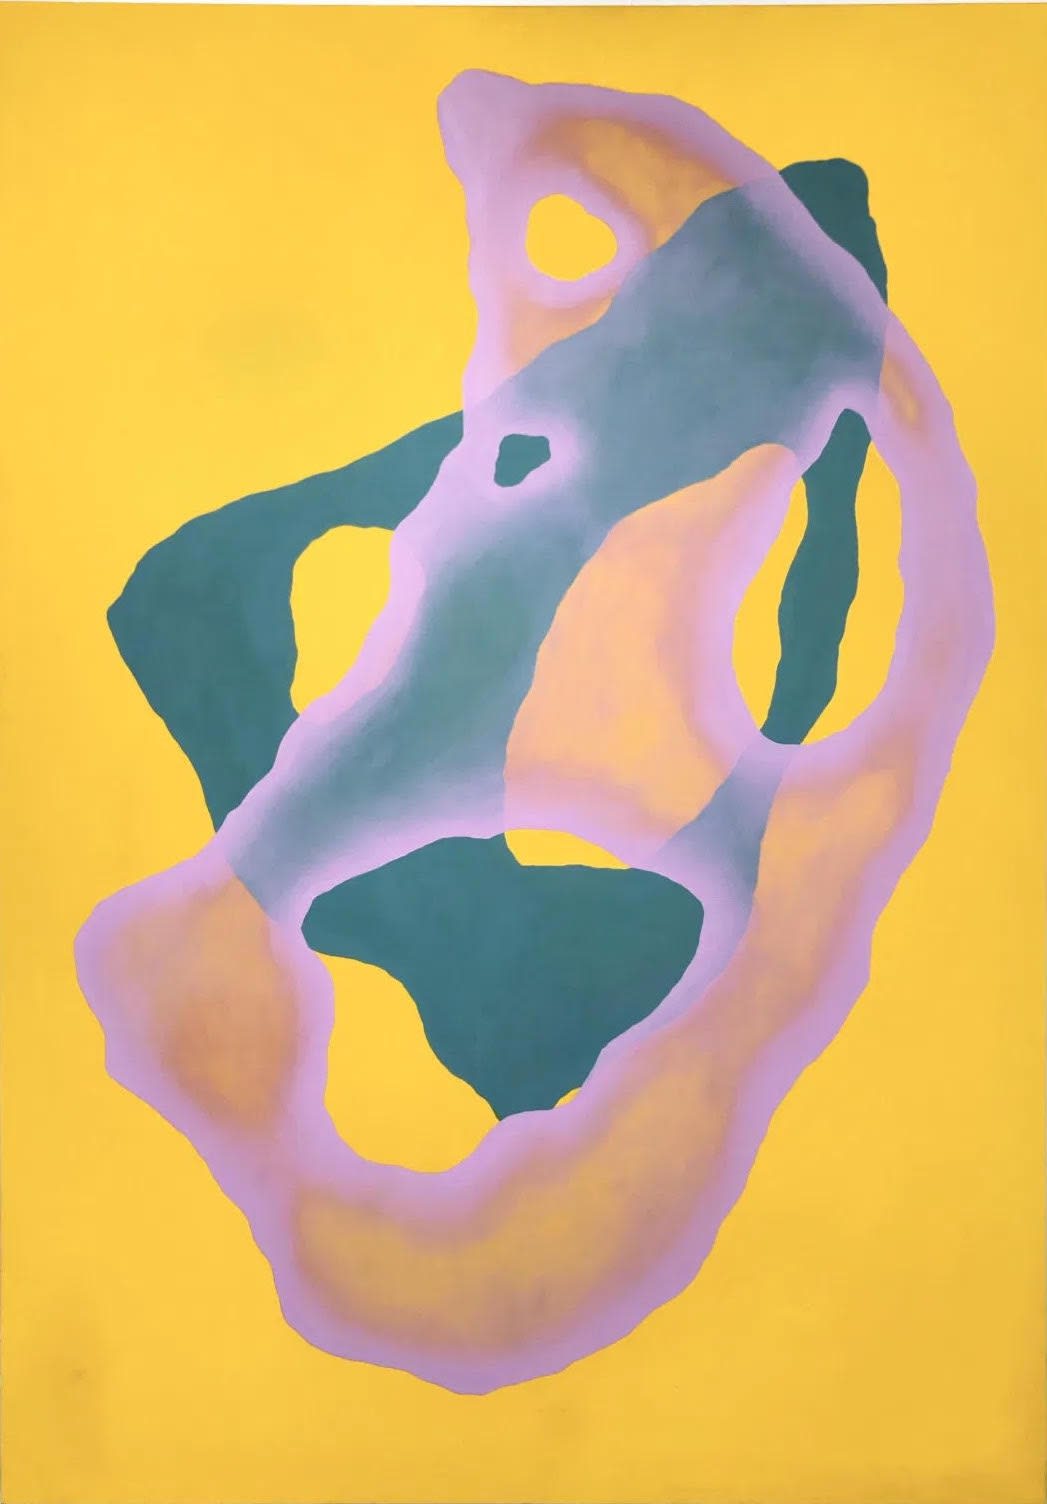 Oleksandra Radchenko, Symbiosis in Cadmium Yellow Hue, 2019